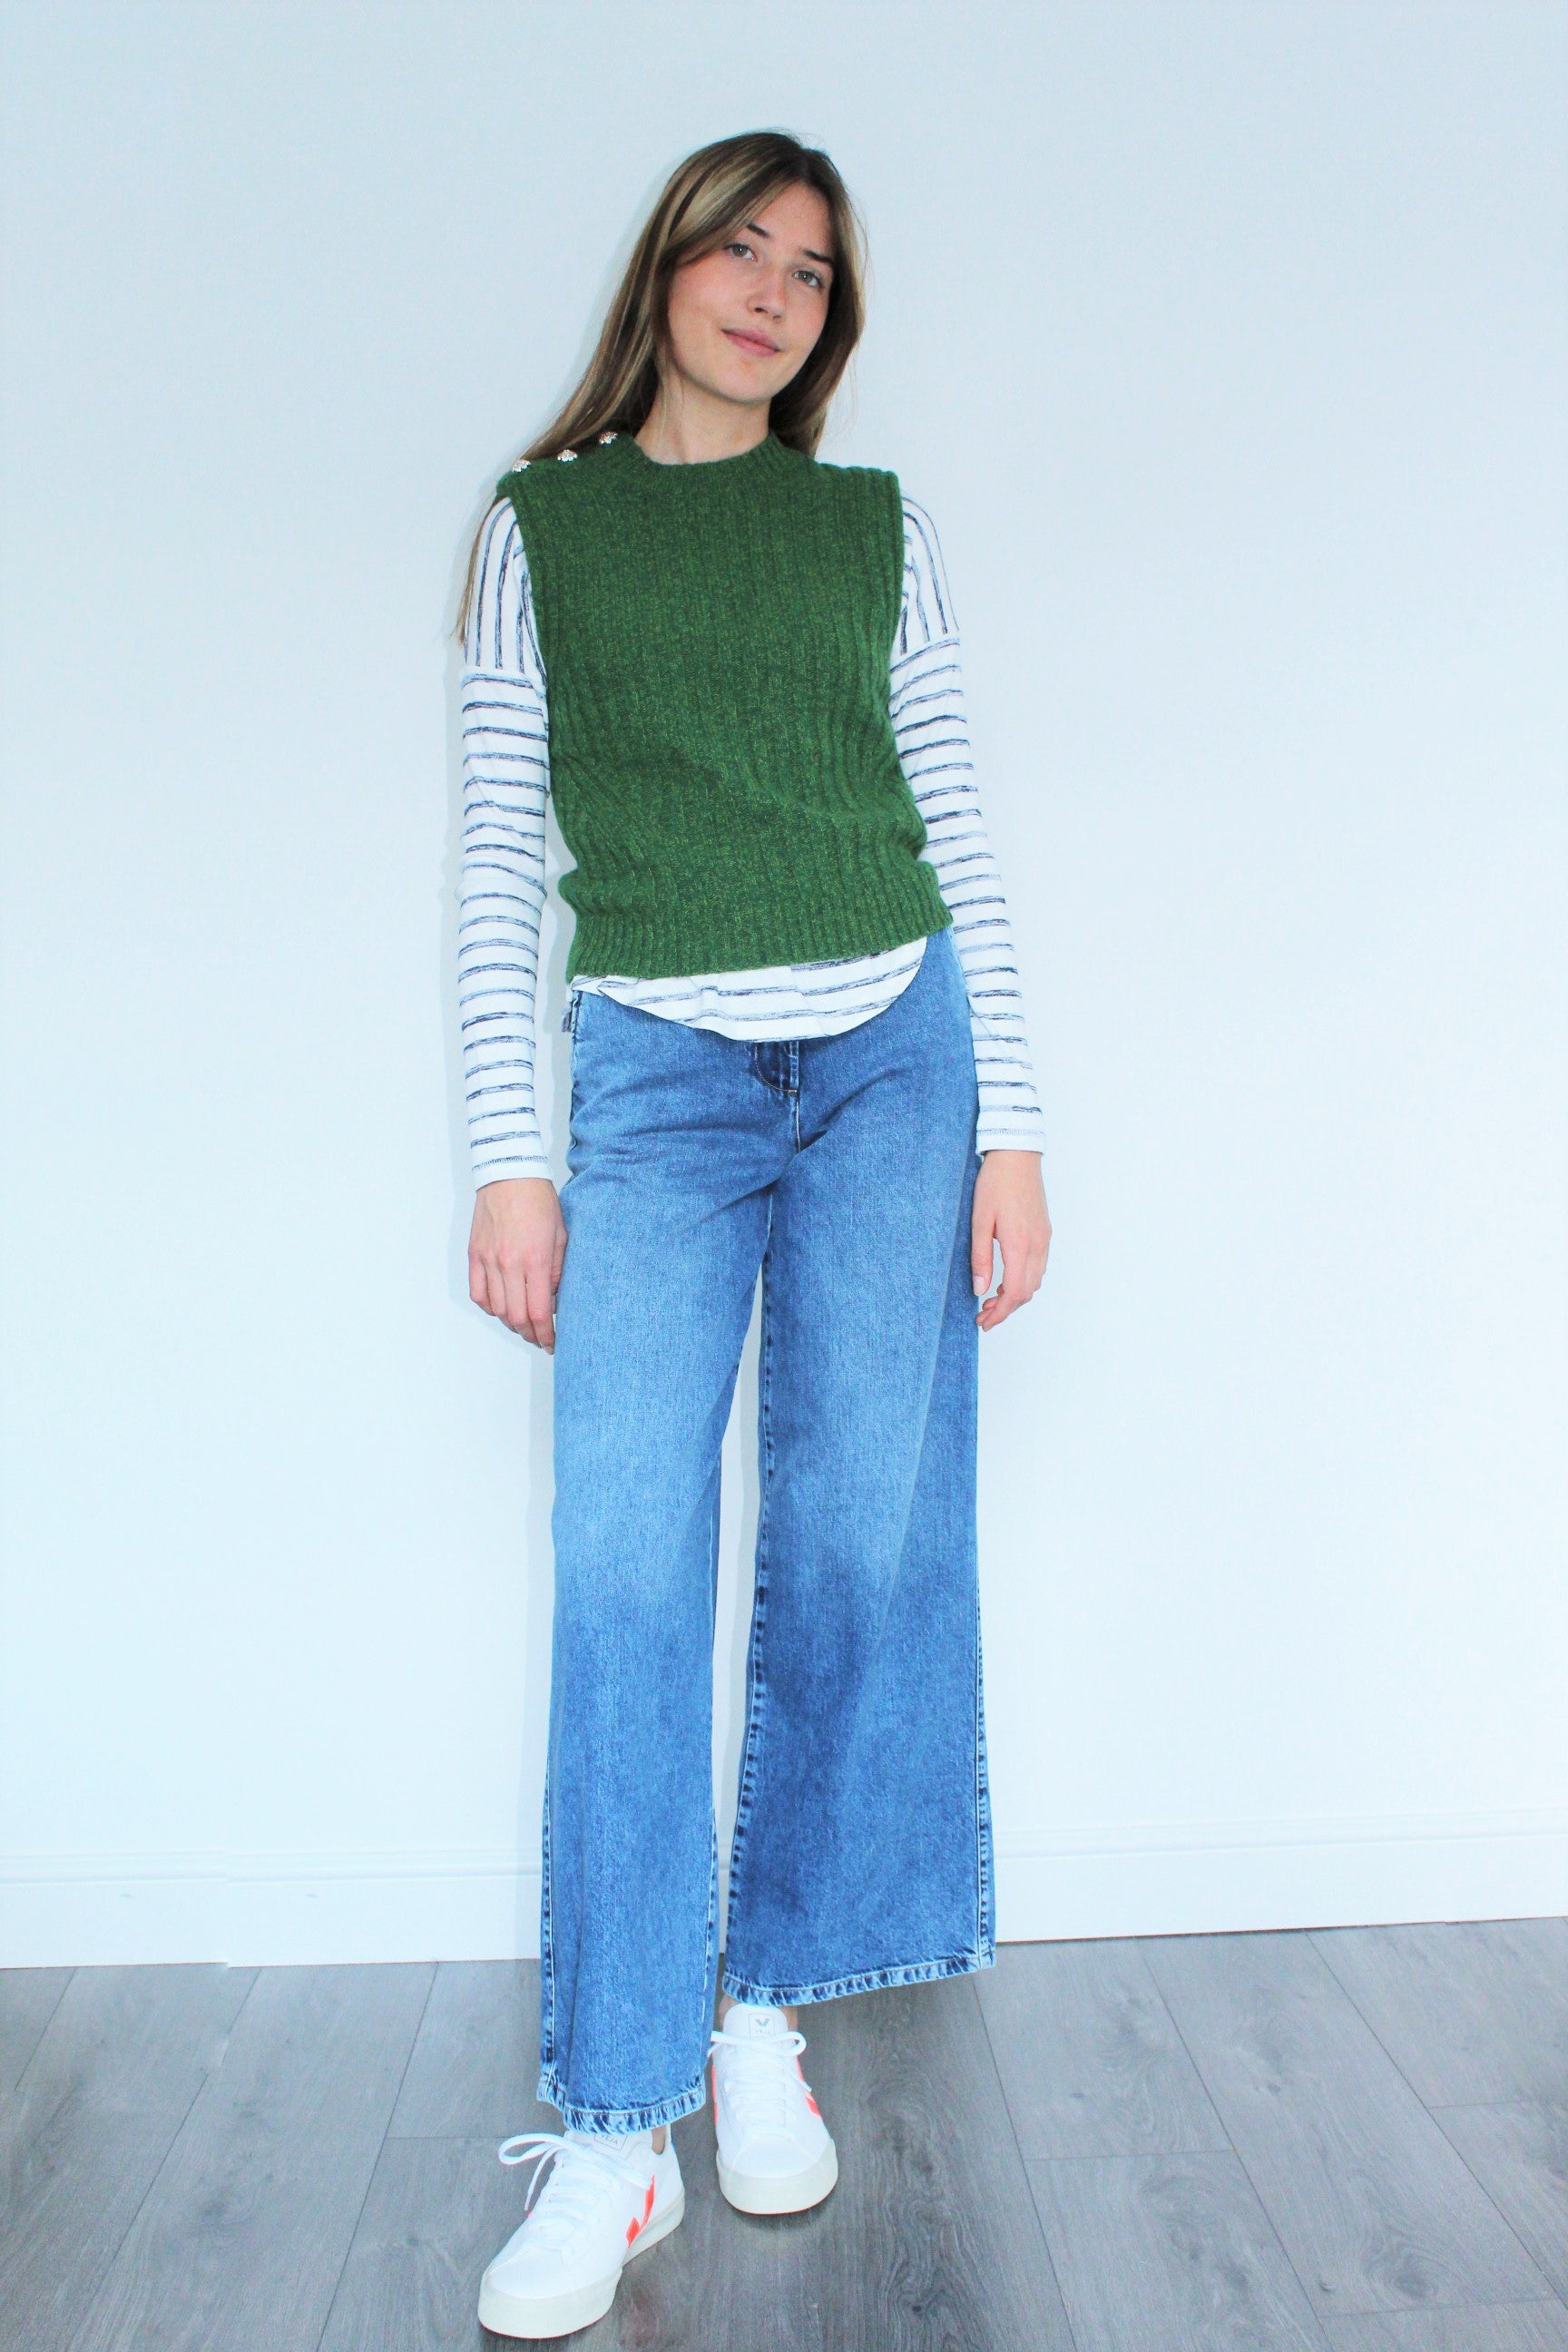 GANNI K1574 Wool Mix Vest in Kelly Green